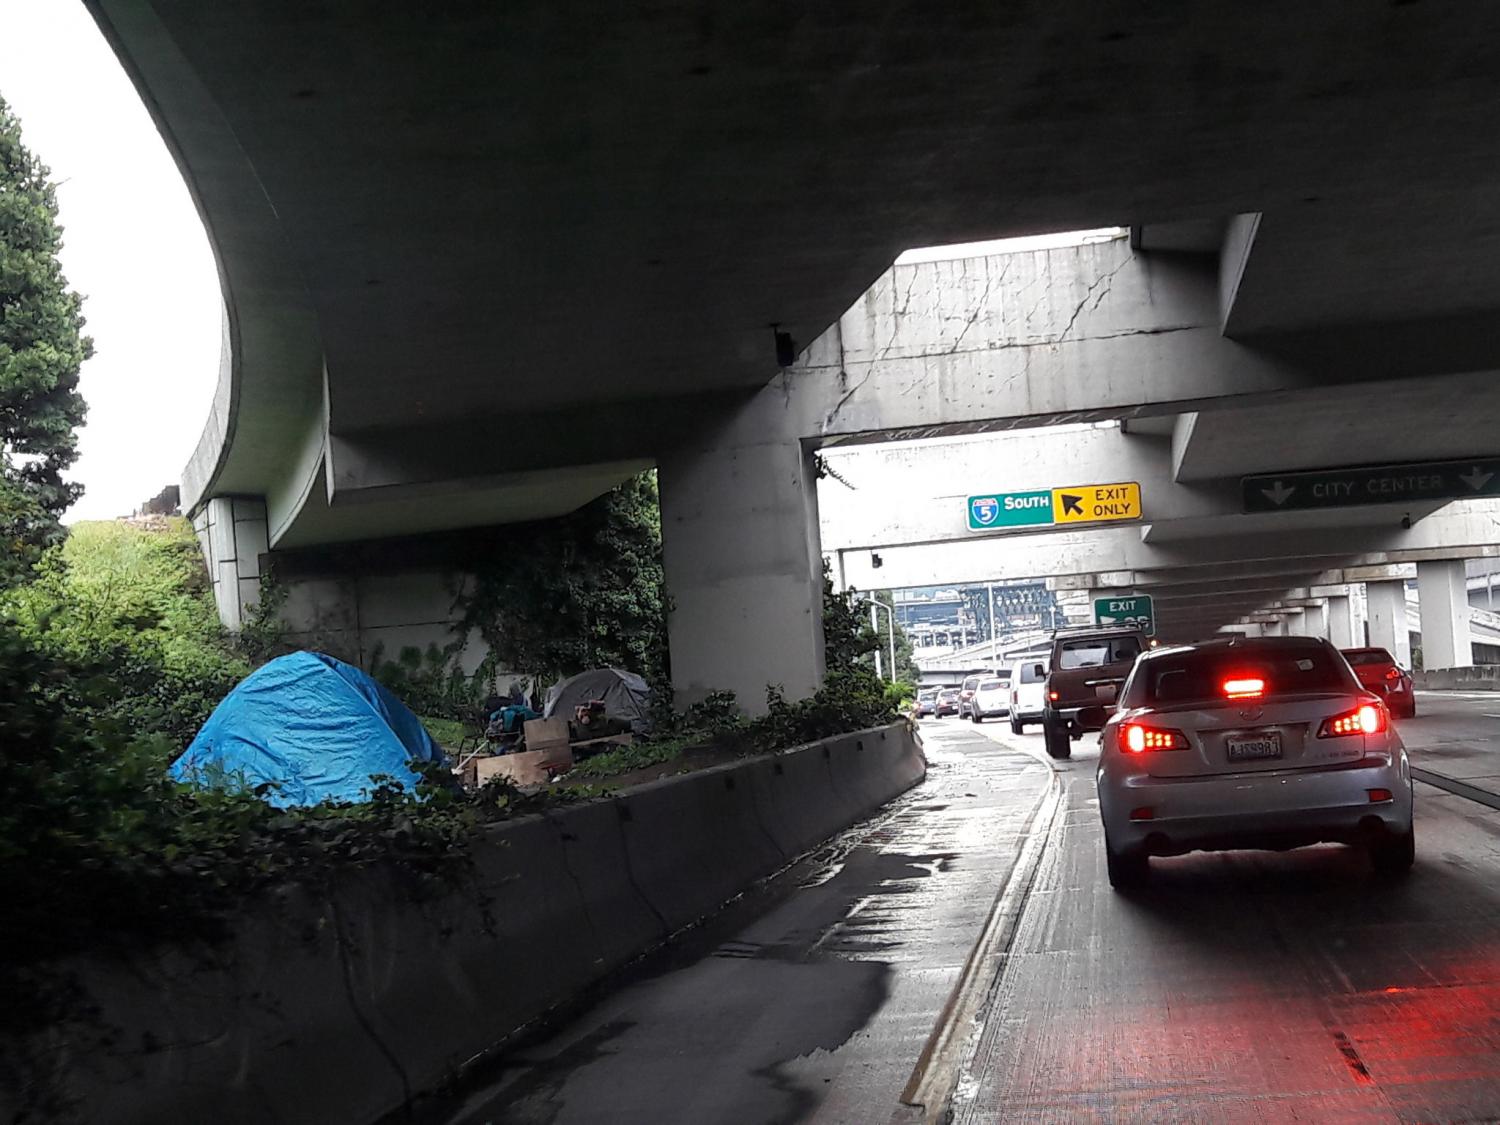 A-homeless-encampment-along-I-5-in-Seattle.jpg